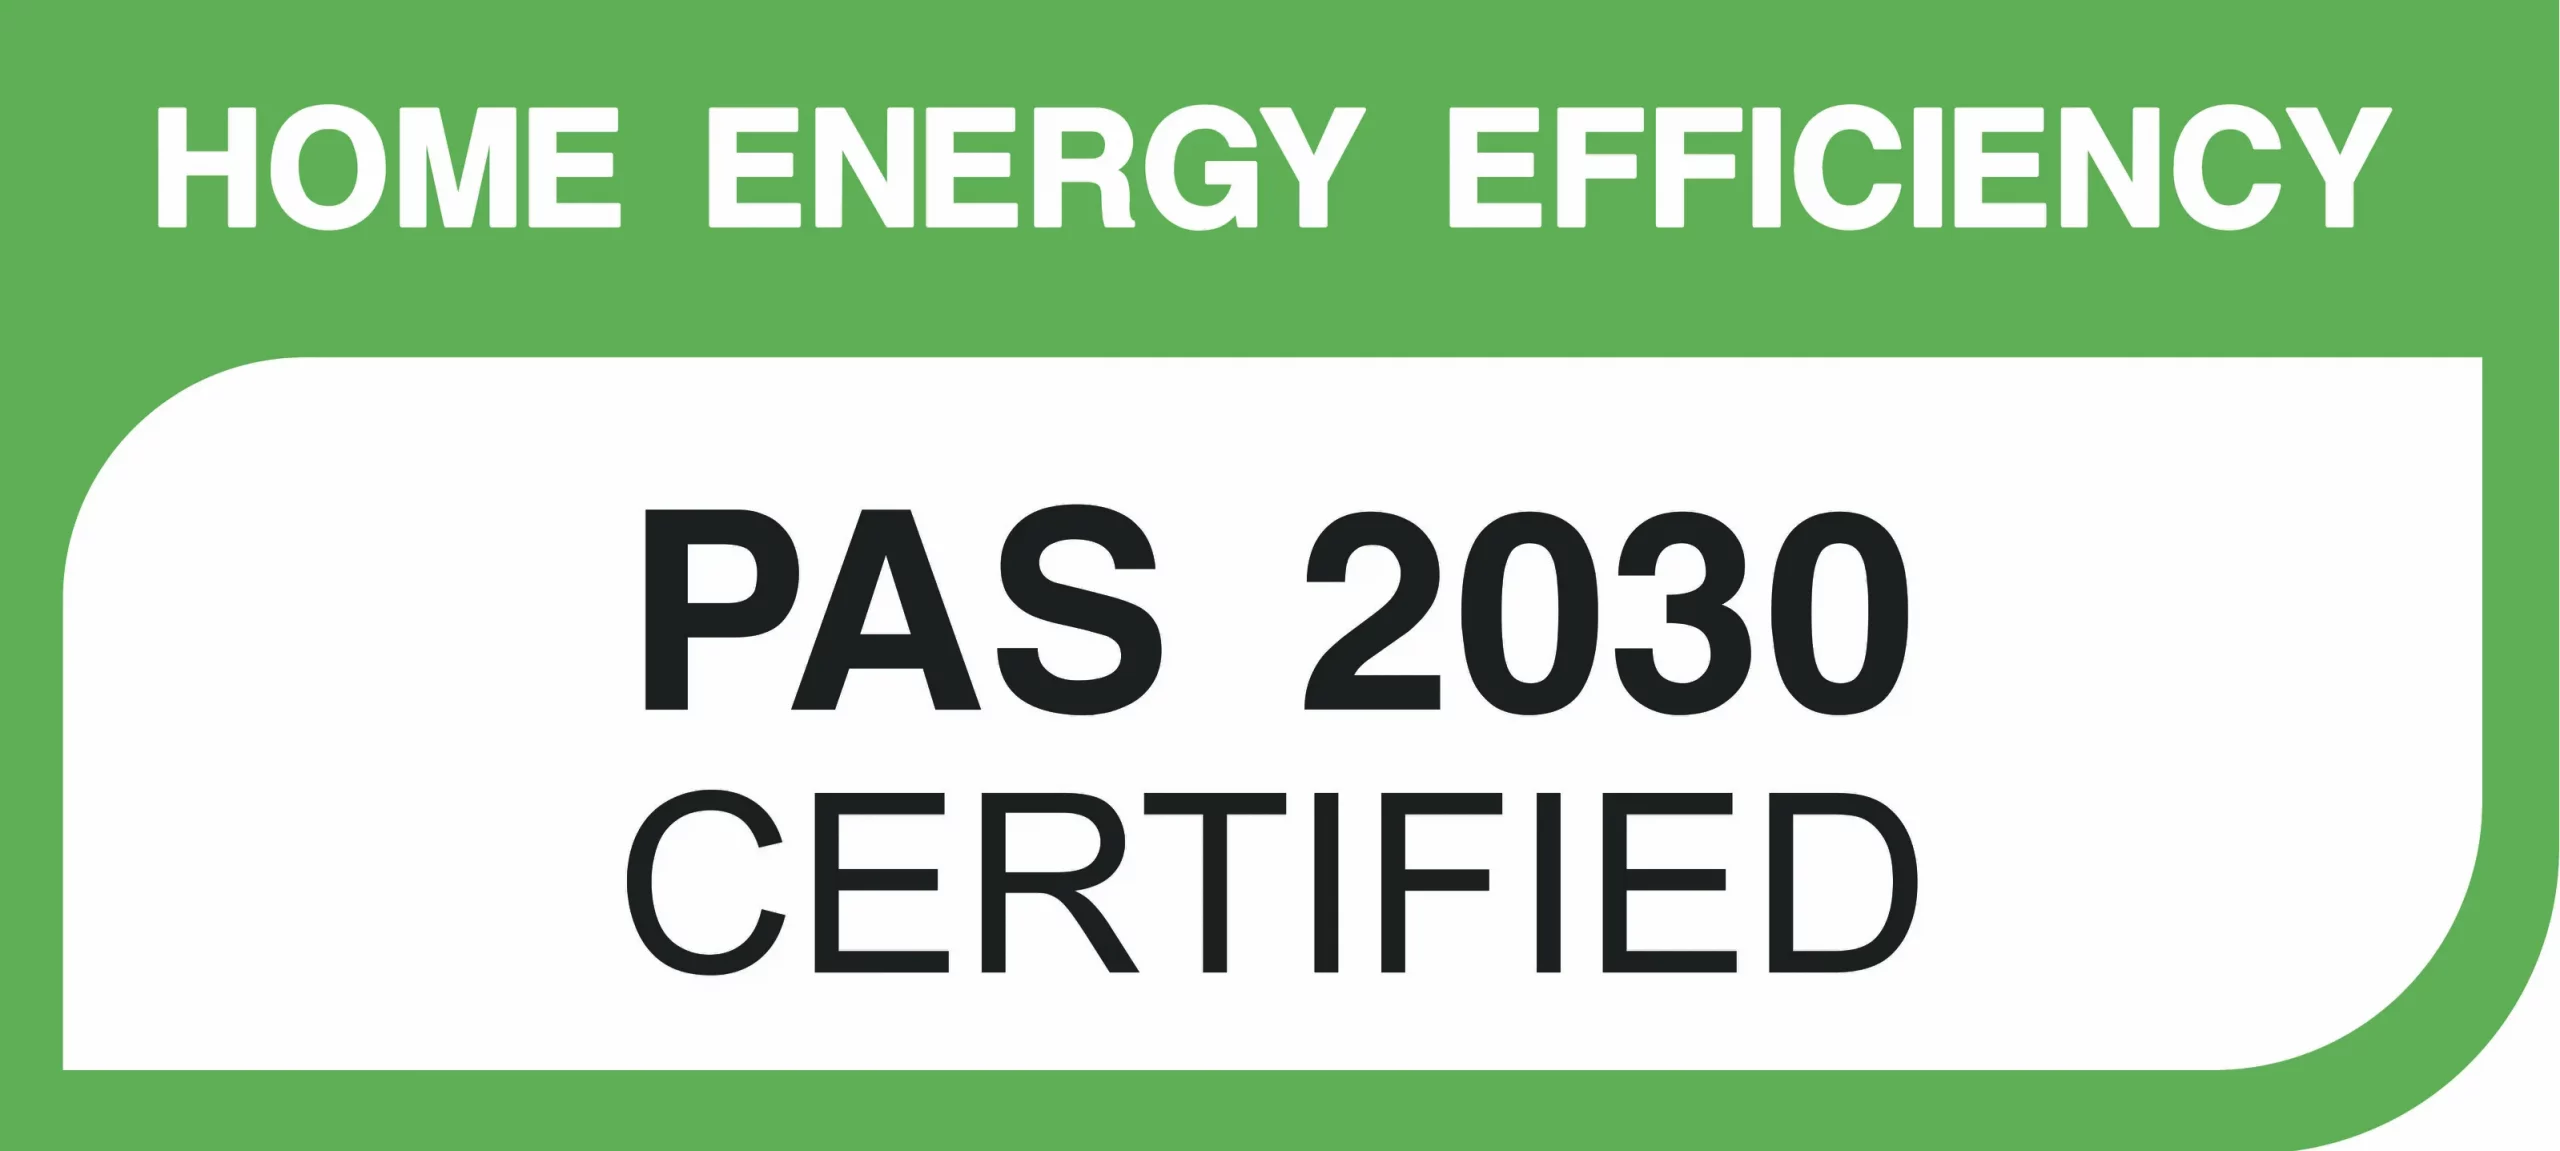 PAS2030 certification